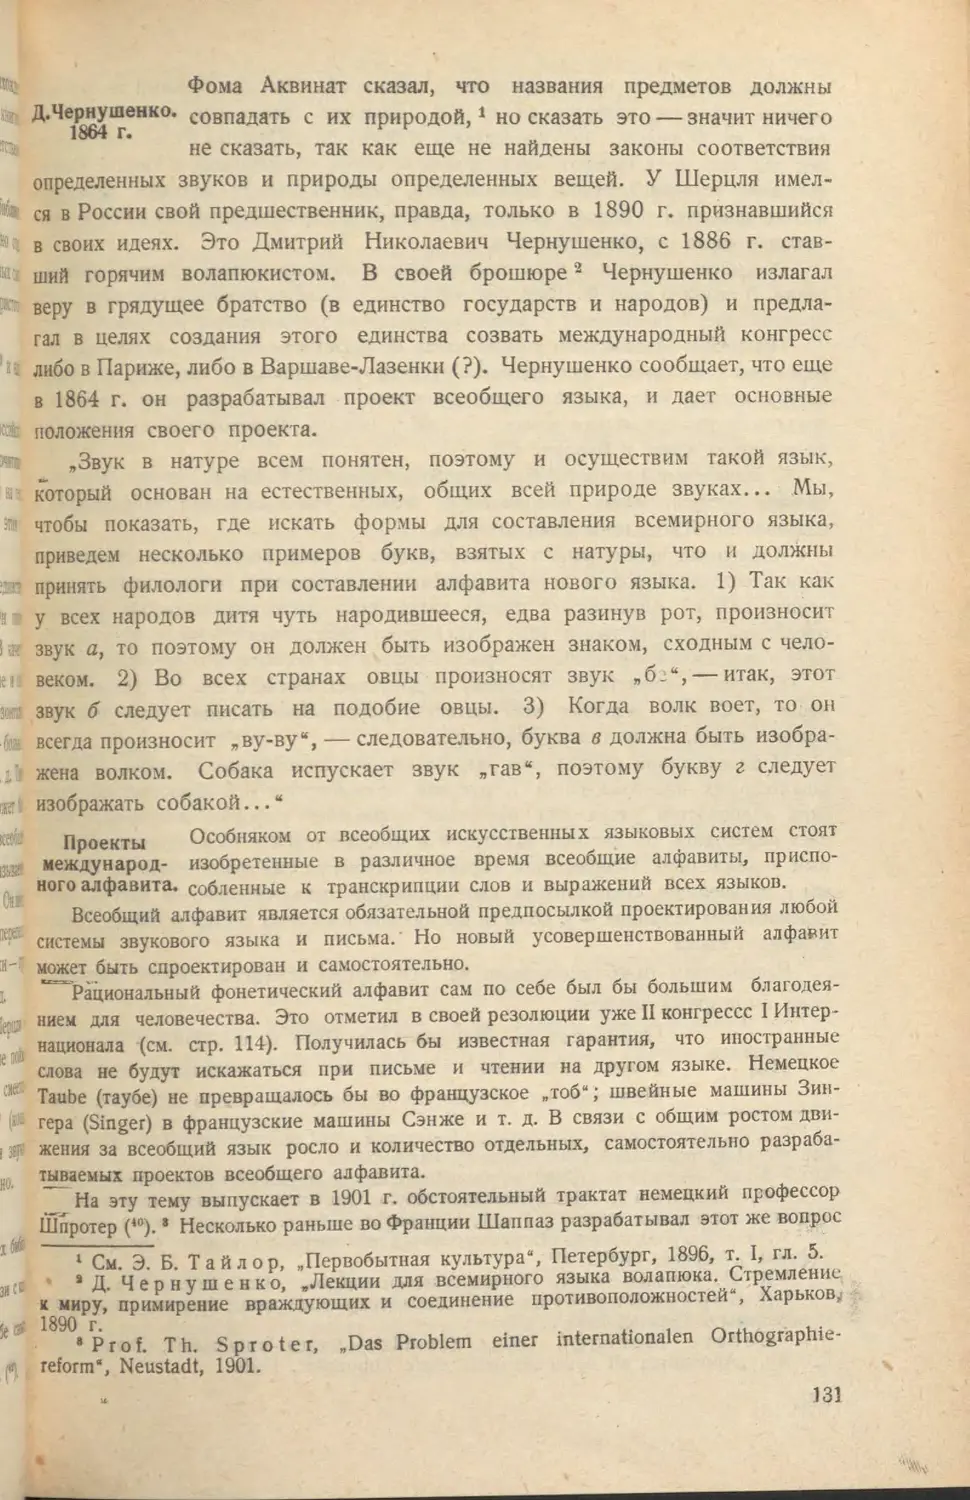 Д. Чернушенко. 1864
Проекты международного алфавита